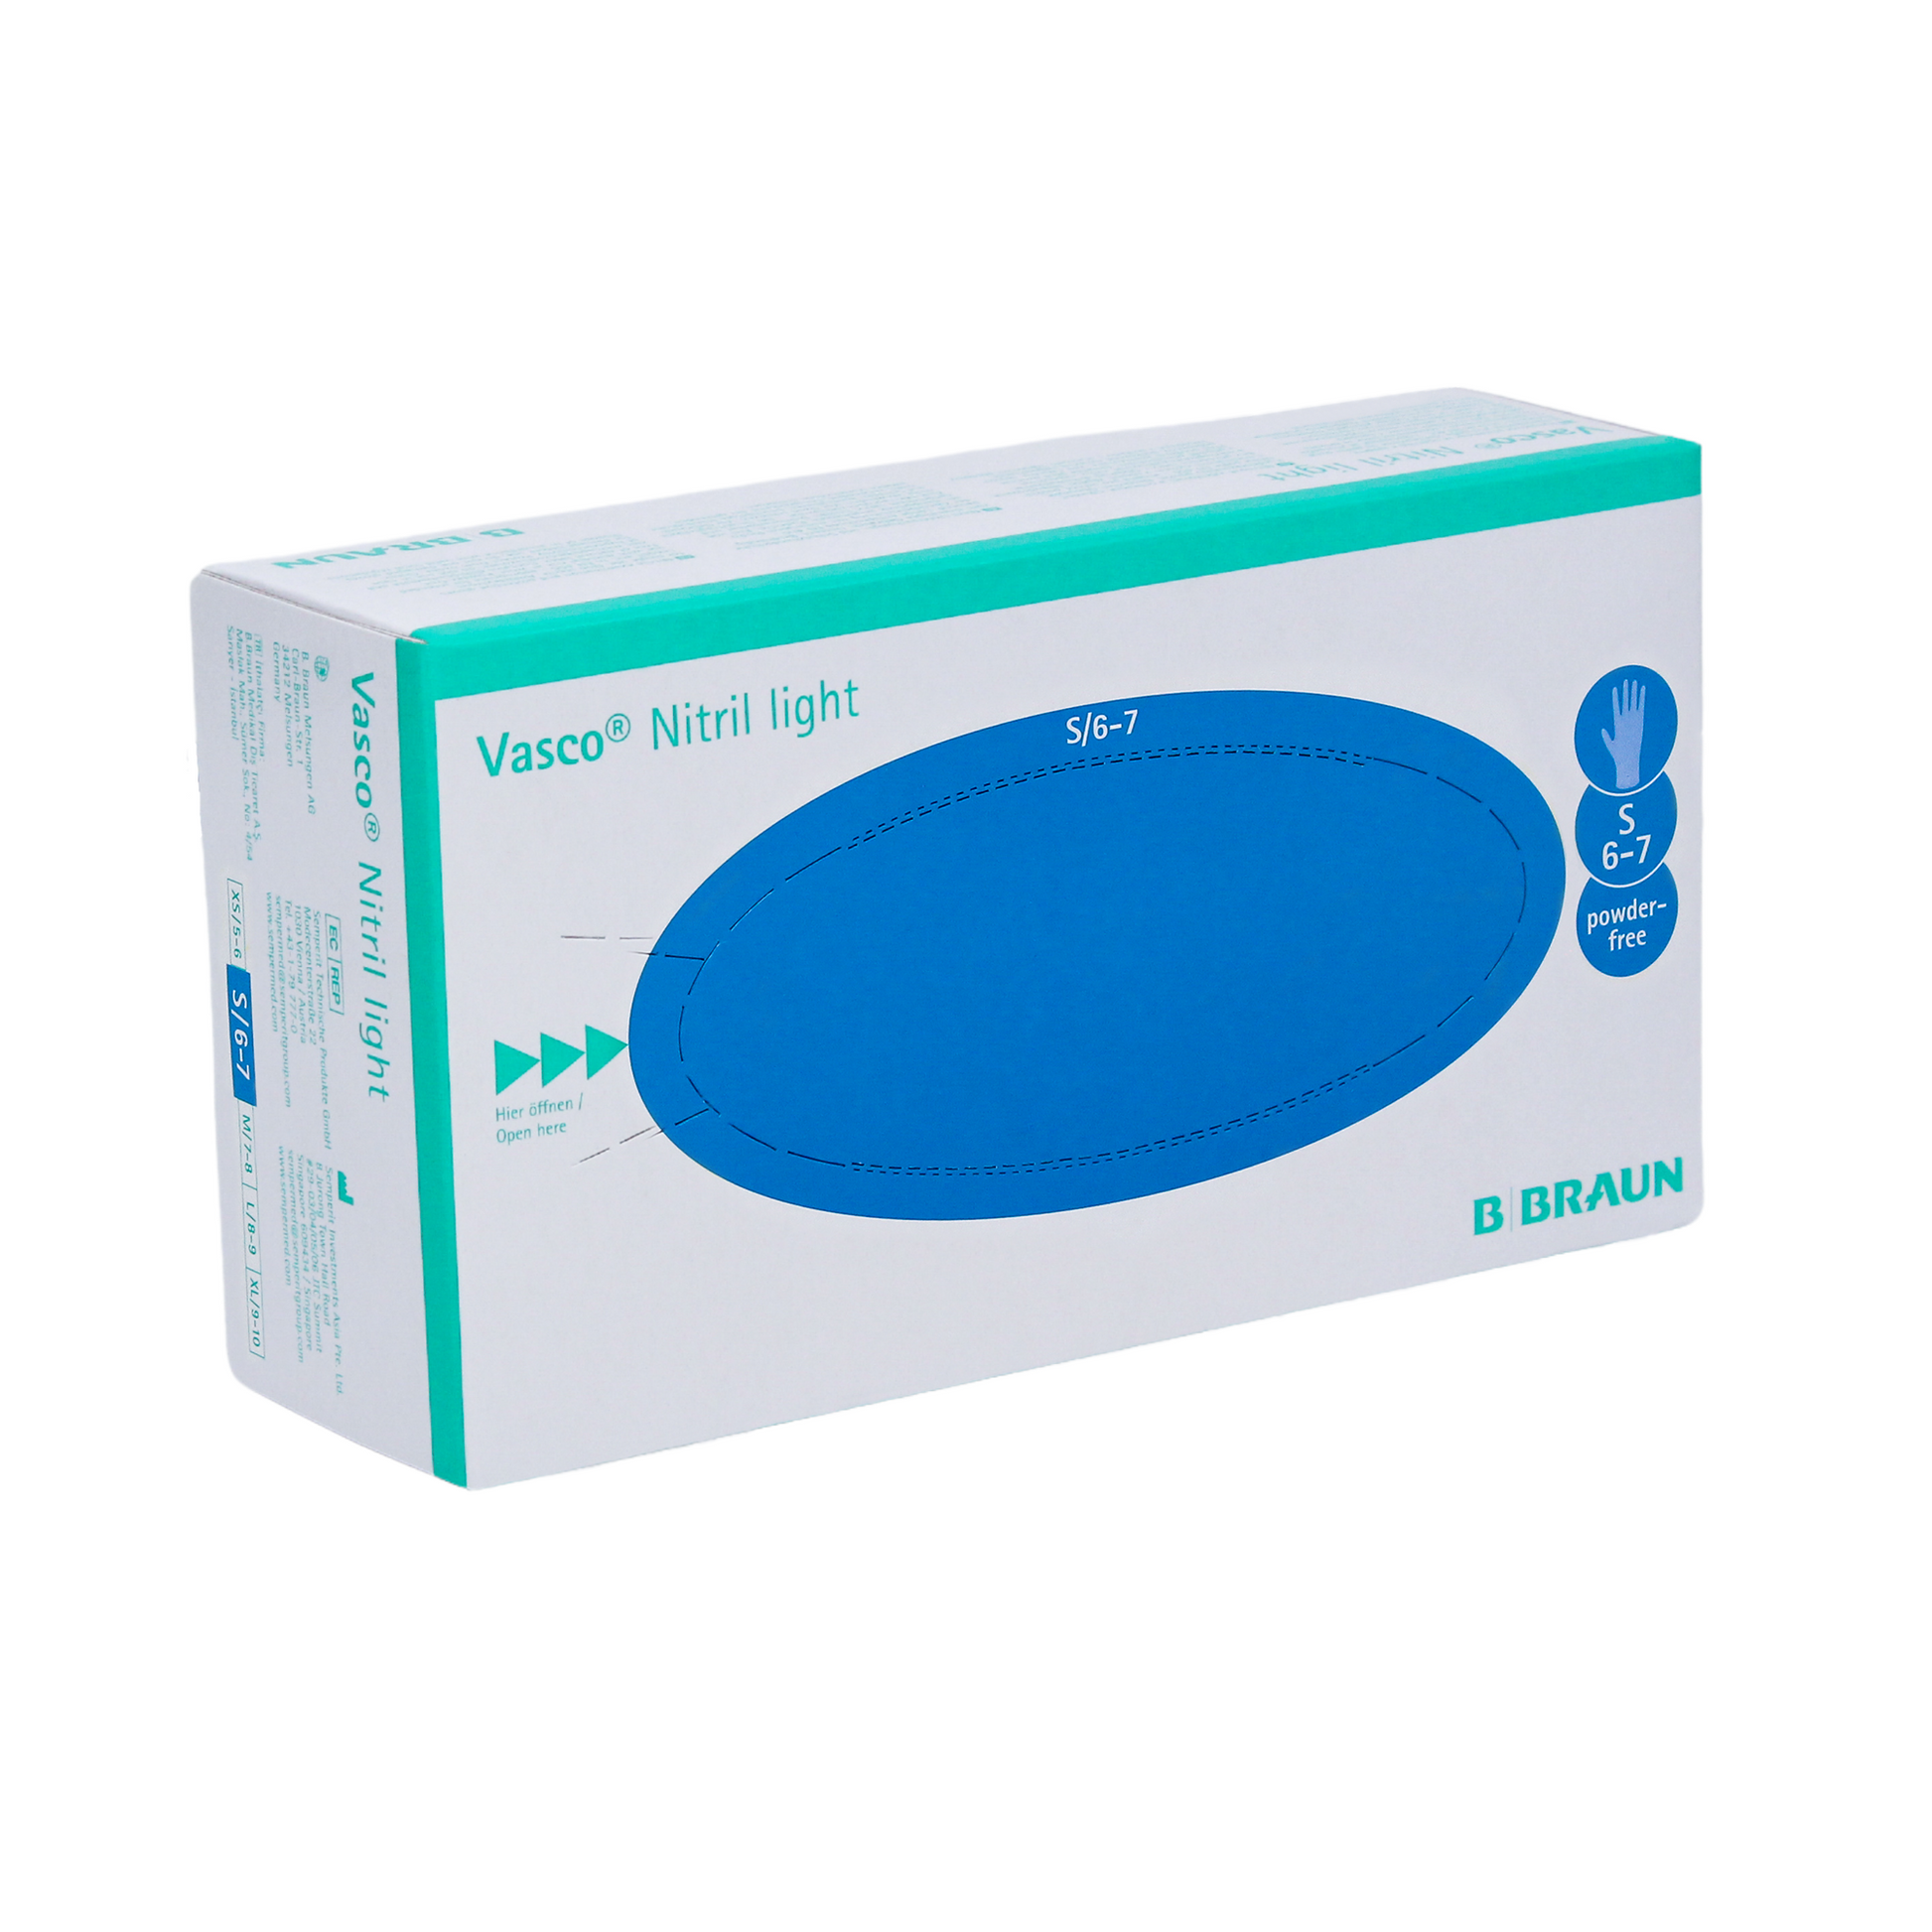 Eine Schachtel medizinische Einweghandschuhe B. Braun Vasco® Nitril light von B. Braun Melsungen AG, Größe S, überwiegend weiß und blaugrün mit Produktgrafiken und Text mit Angaben zu Inhalt und Marke.